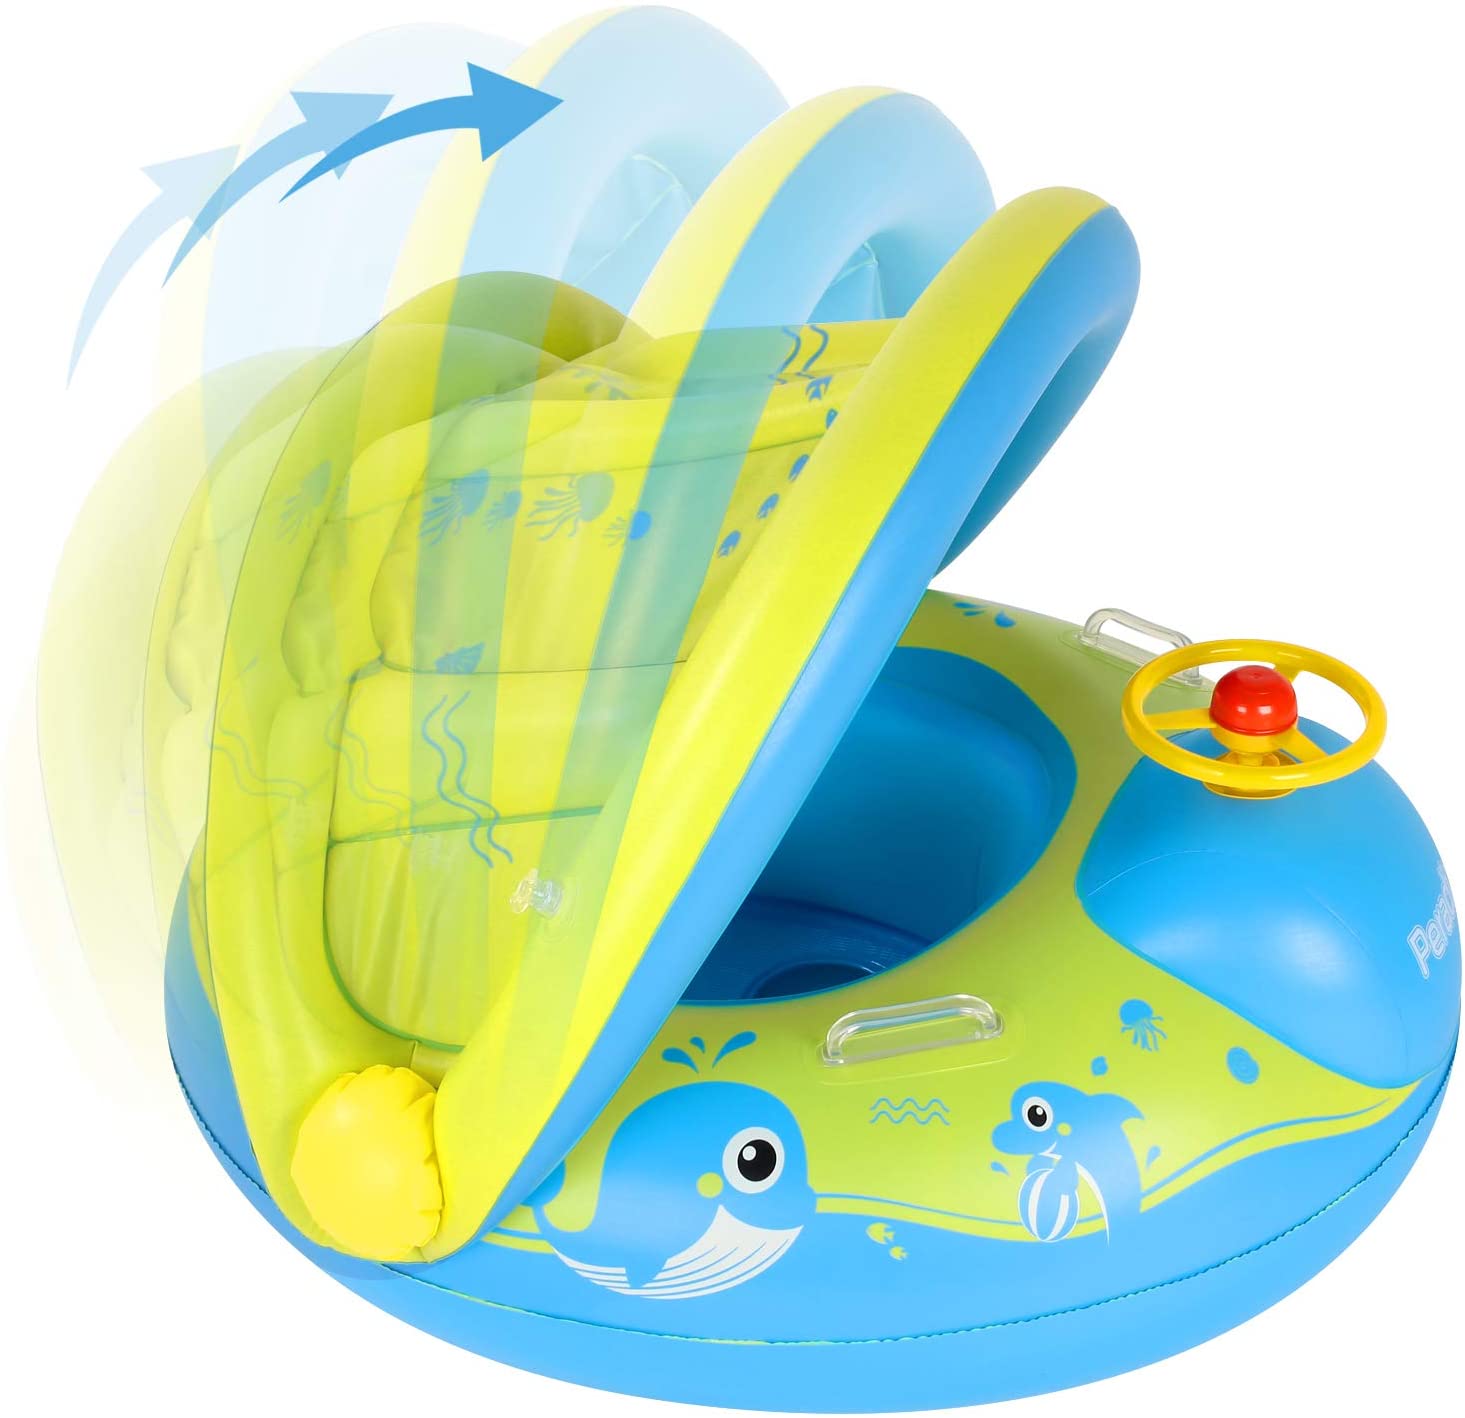 flotadores bebes mas seguros, flotador de bebe con sombrilla, mejores flotadores para bebes, flotador bebe amazon, flotador amazon bebe